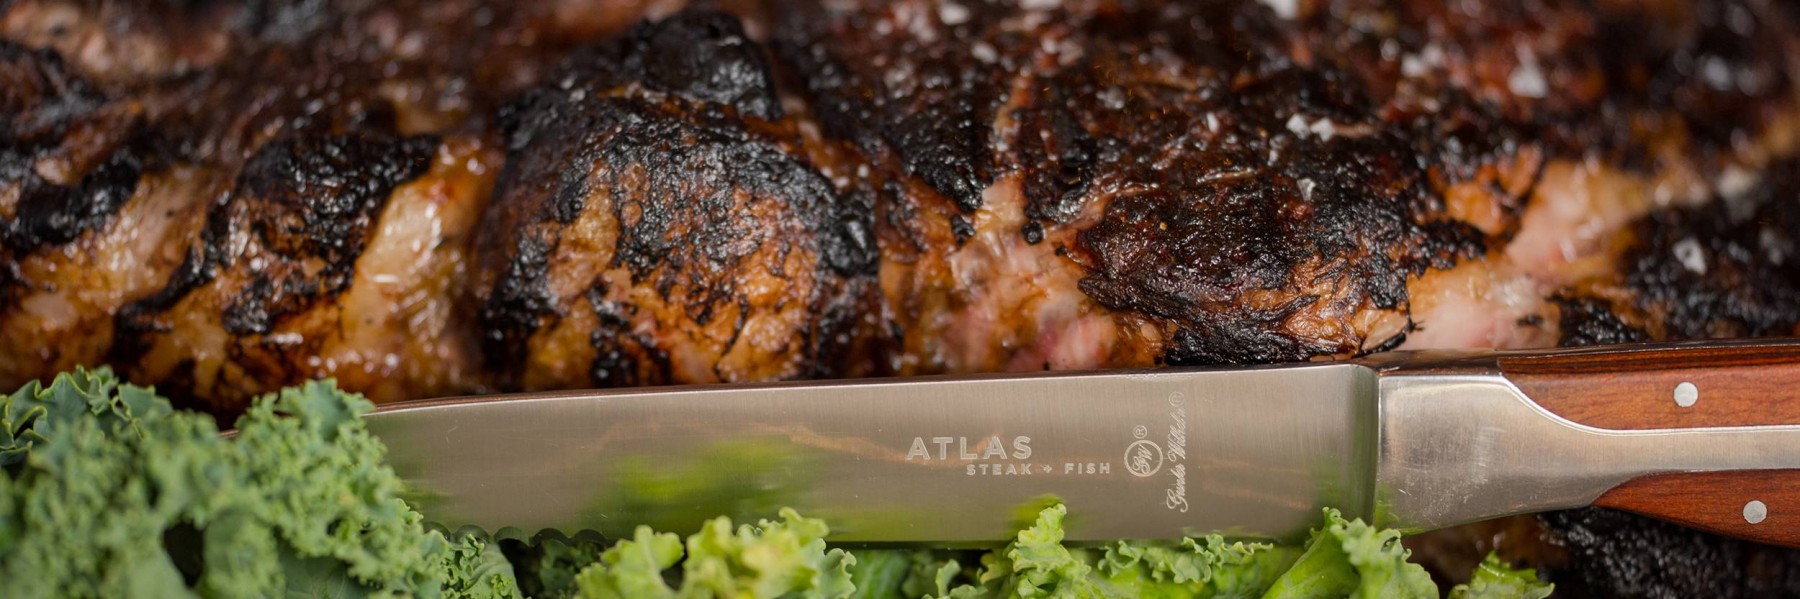 Atlas Steak and Fish